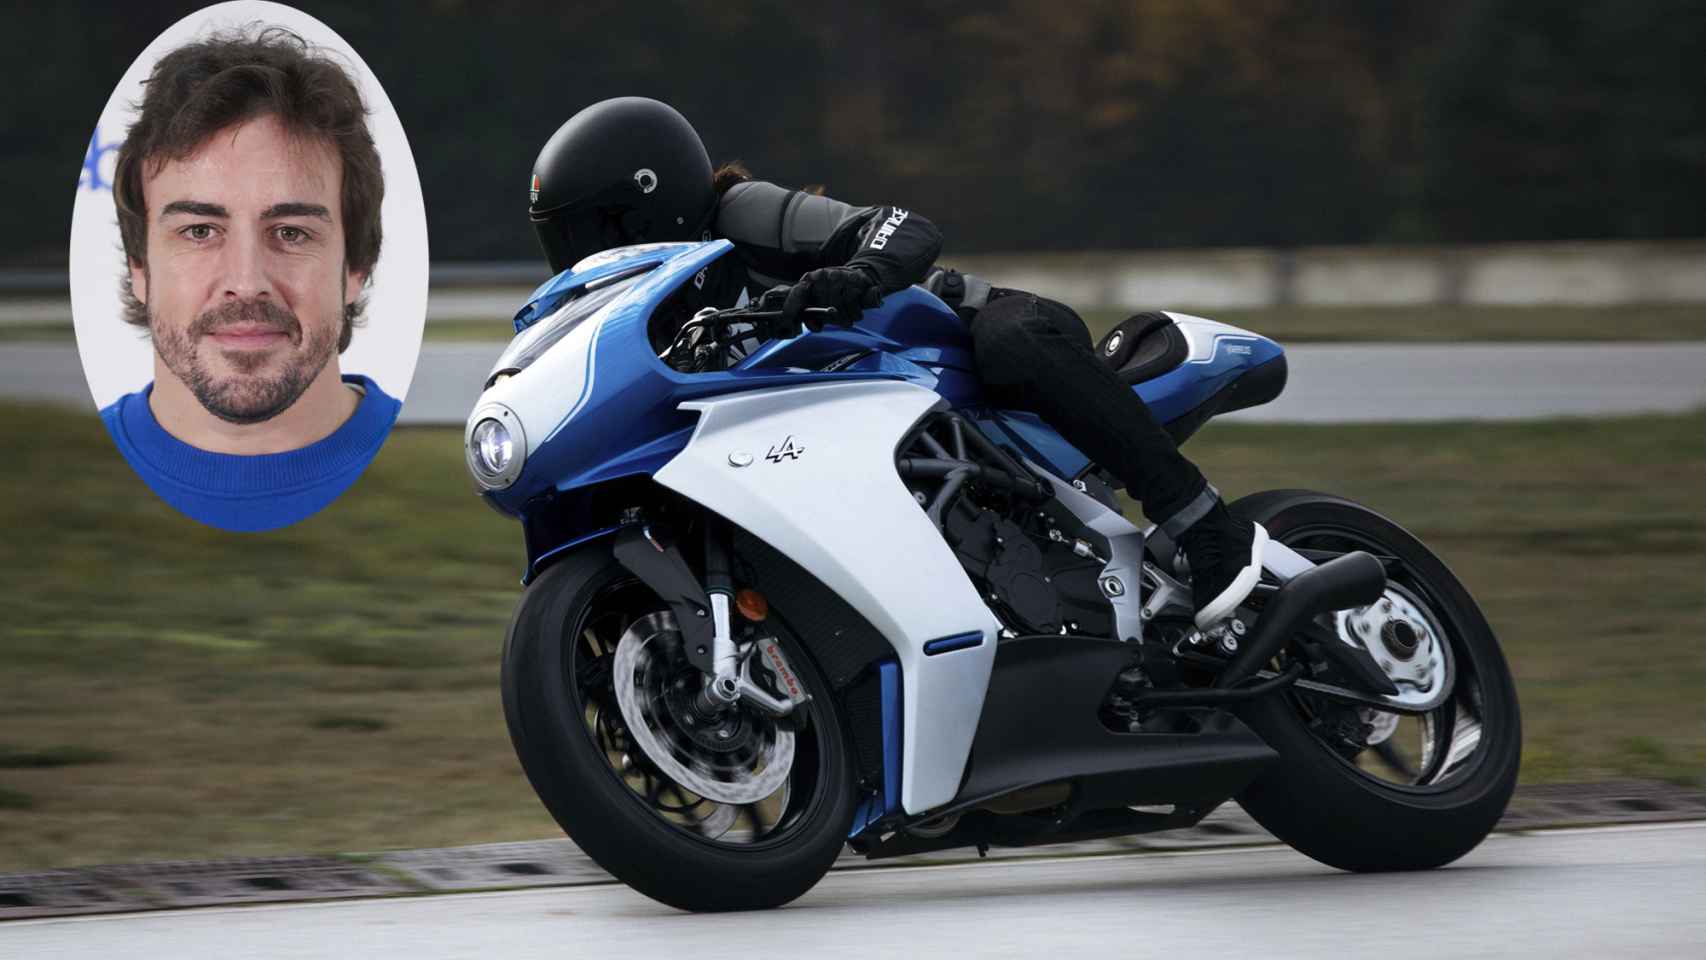 Así es la MV Agusta Superveloce, una moto deportiva que cuesta 36.000 euros y ya está agotada.